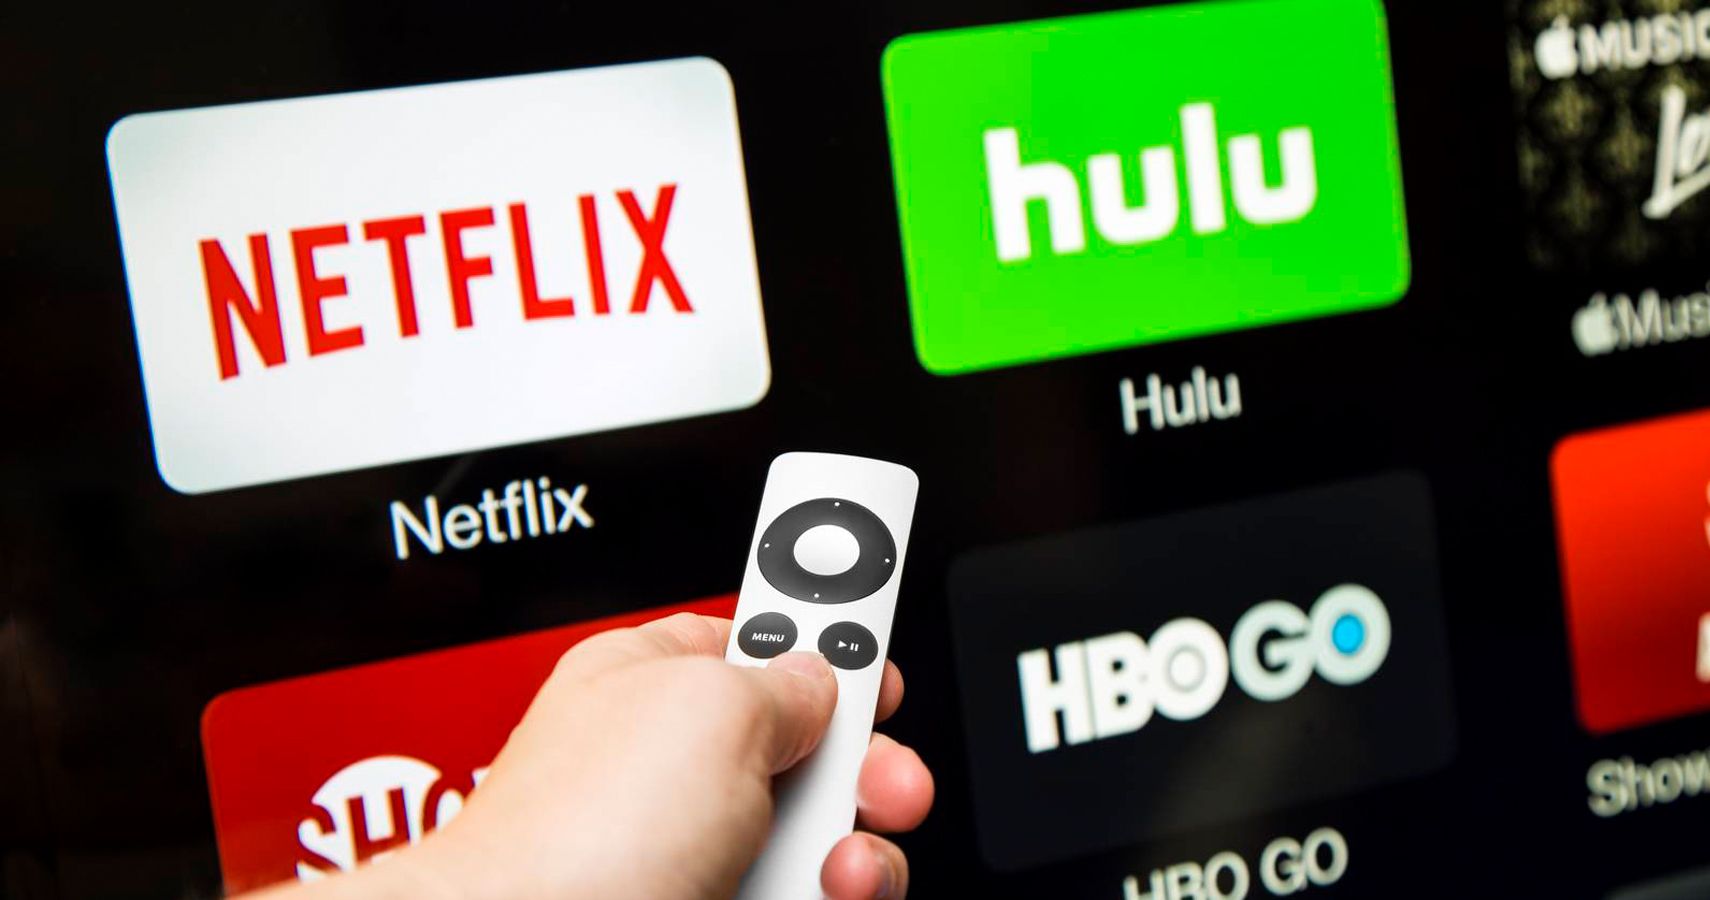 Netflix Hulu Streaming Options